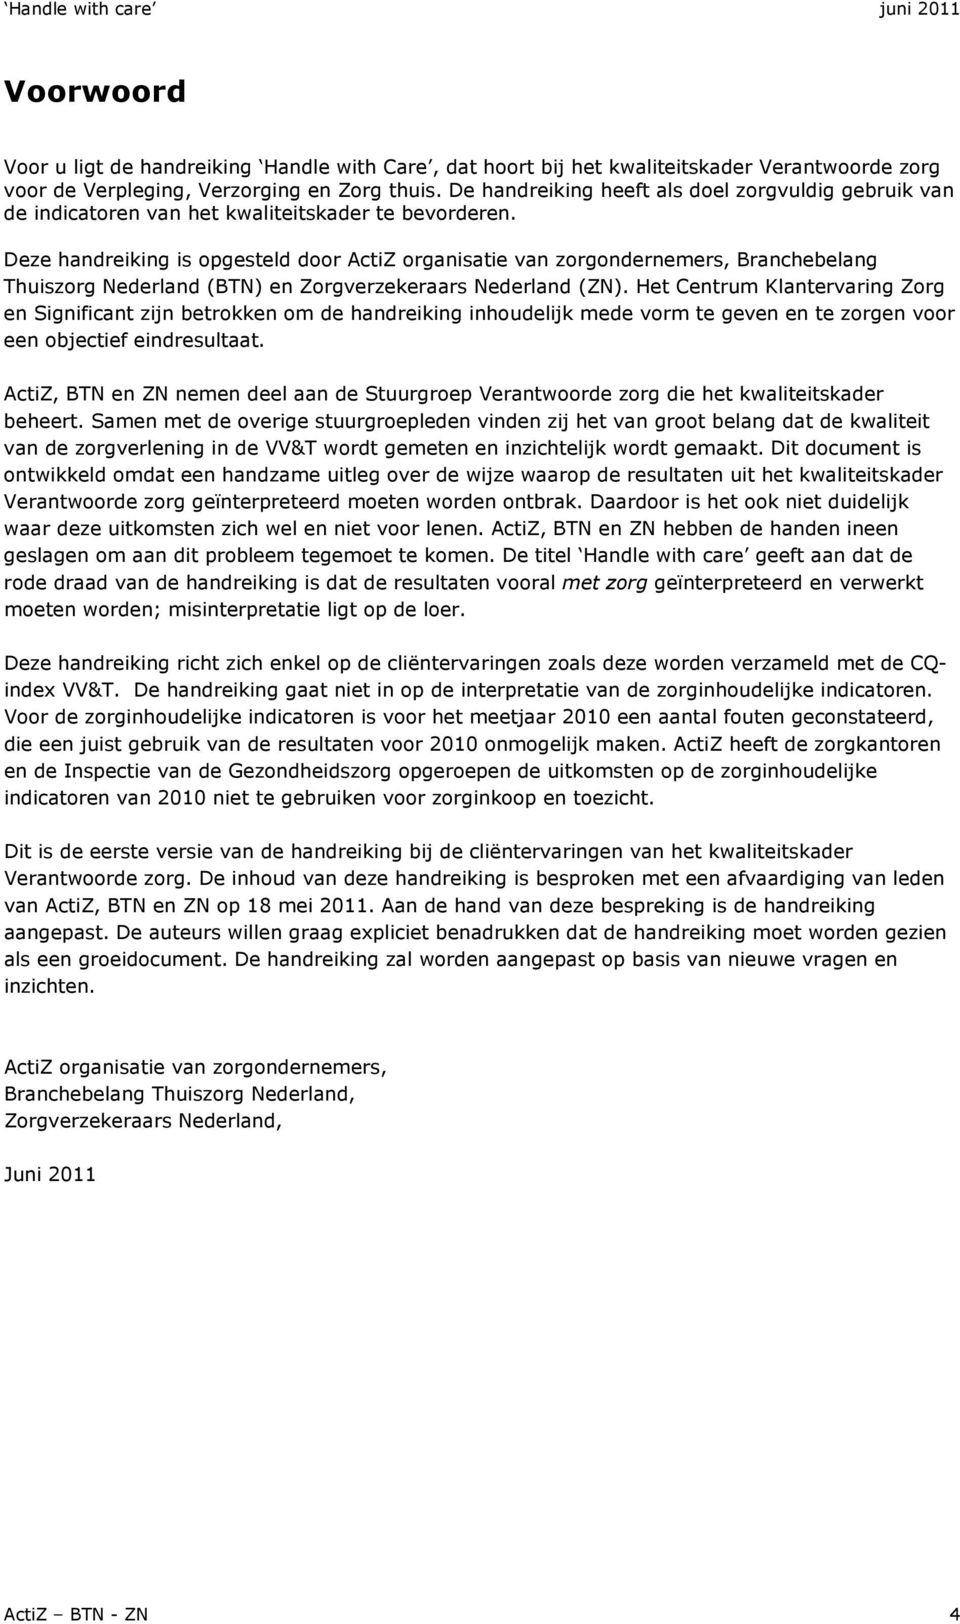 Deze handreiking is opgesteld door ActiZ organisatie van zorgondernemers, Branchebelang Thuiszorg Nederland (BTN) en Zorgverzekeraars Nederland (ZN).